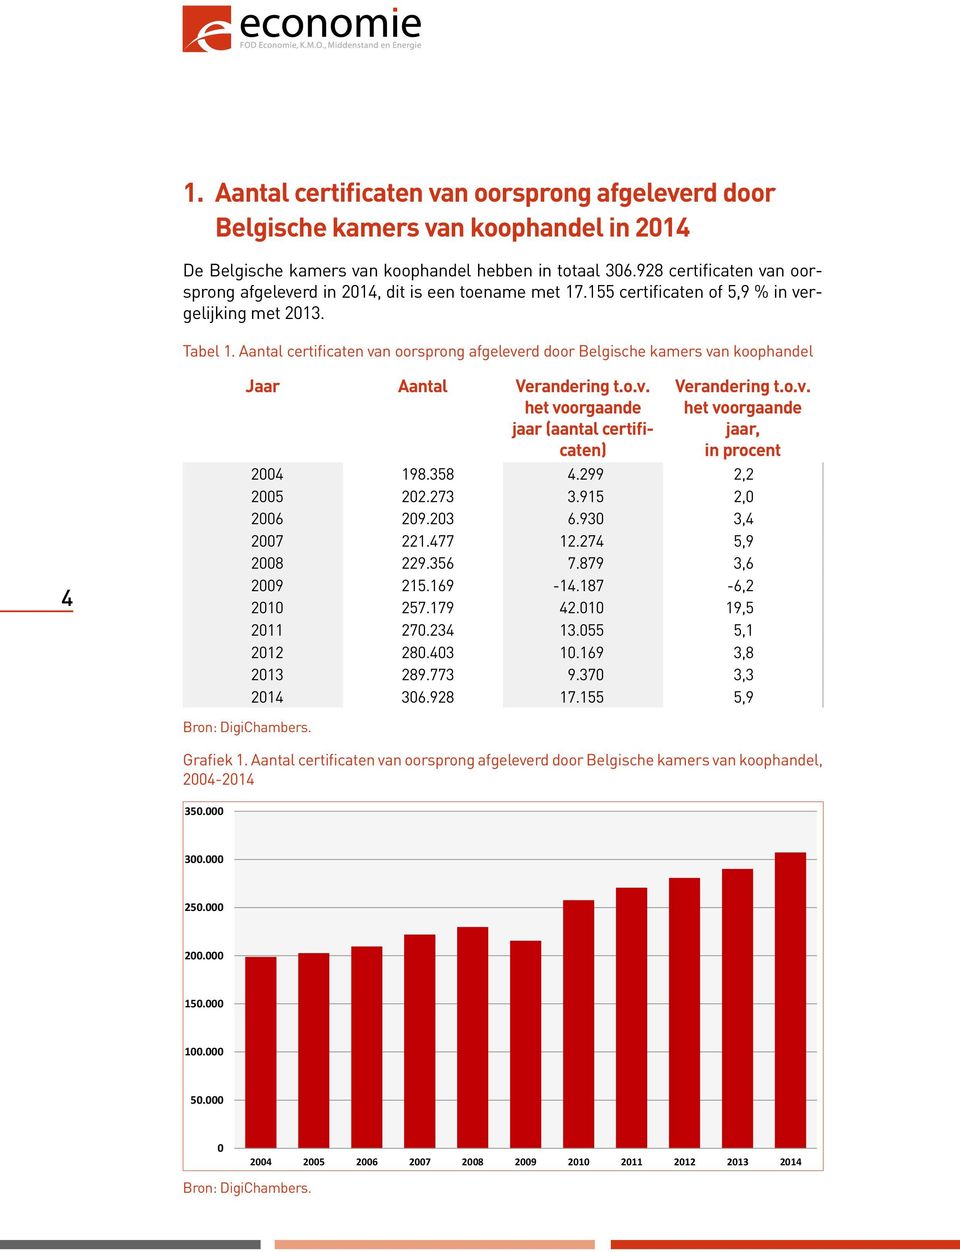 Aantal certificaten van oorsprong afgeleverd door Belgische kamers van koophandel 4 Jaar Aantal Verandering t.o.v. het voorgaande jaar (aantal certificaten) Verandering t.o.v. het voorgaande jaar, in procent 2004 198.